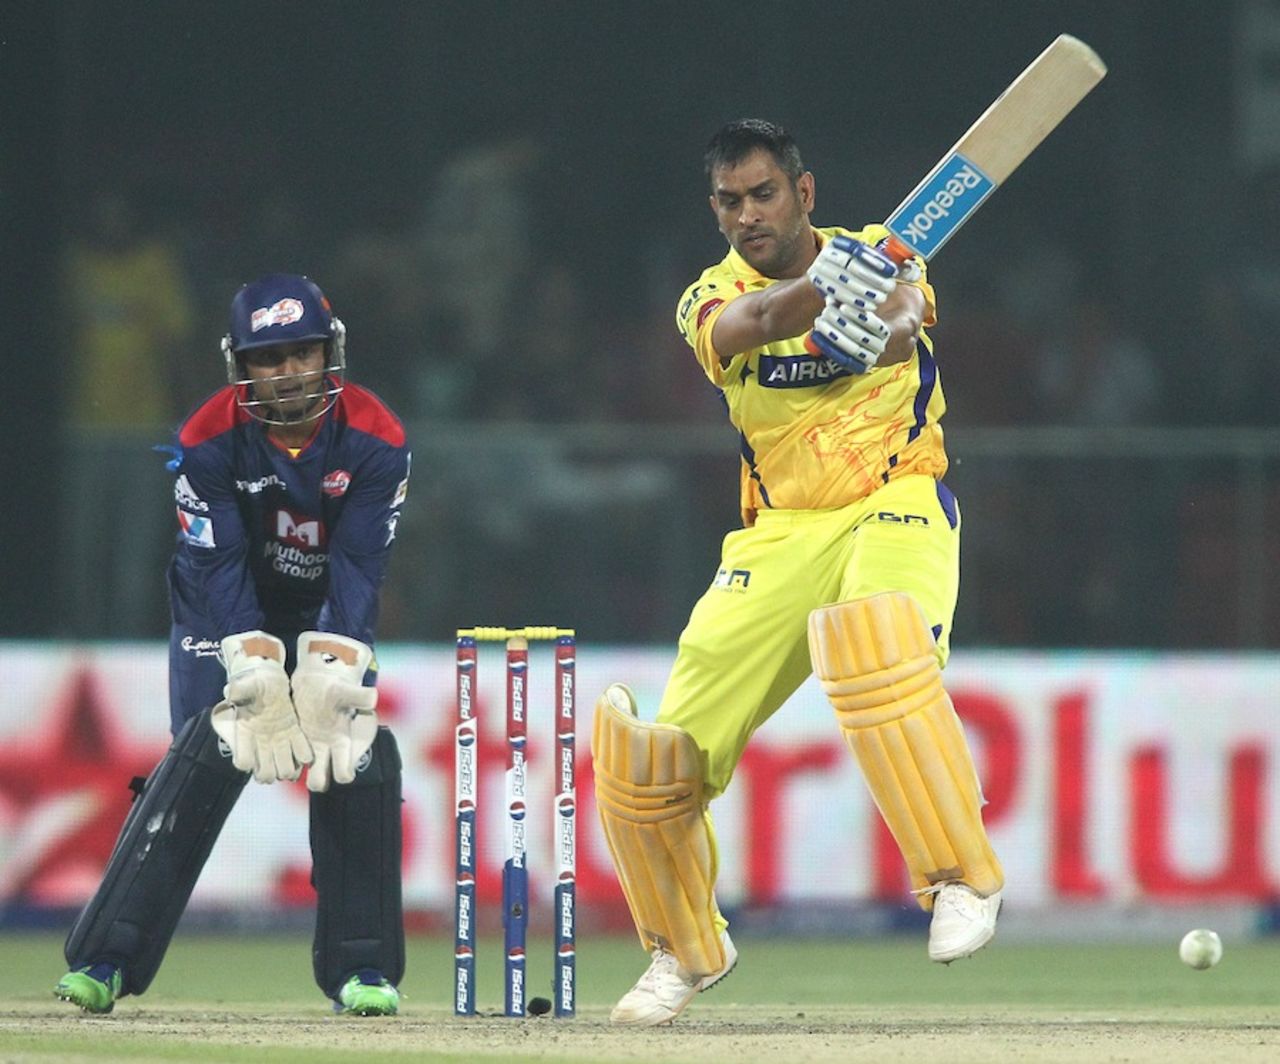 MS Dhoni scored 44 off 23 balls, Delhi Daredevils v Chennai Super Kings, IPL, Delhi, April 18, 2013